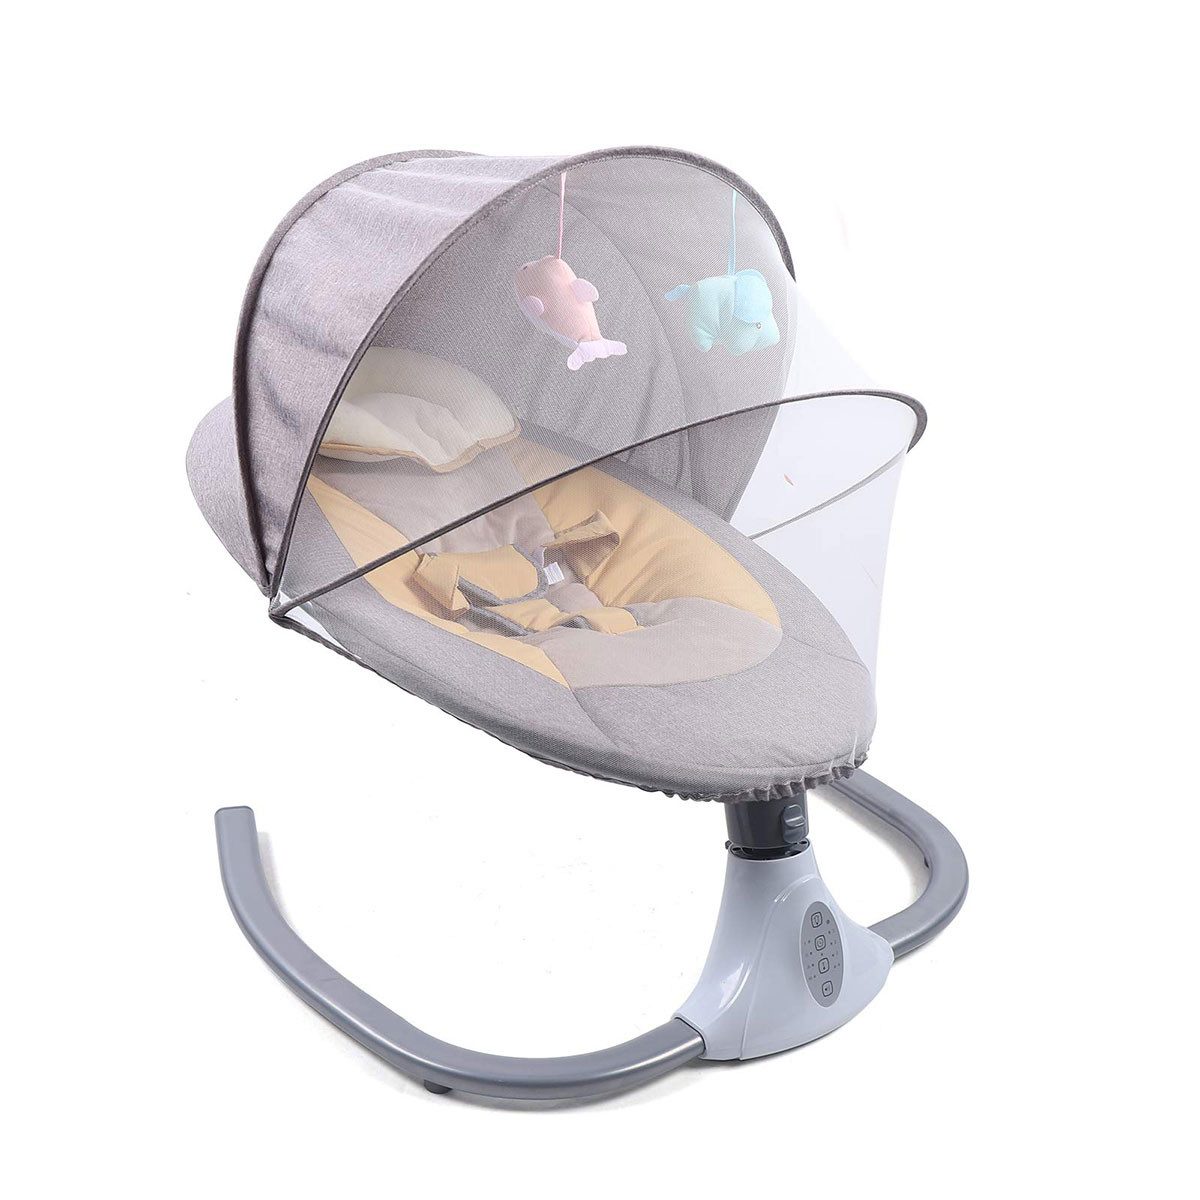 DOPWii Babyschaukel Elektrischer Baby-Schaukelstuhl, faltbare Baby-Schaukel, mit Bluetooth-Musik, 4 Geschwindigkeiten Schaukelbereich